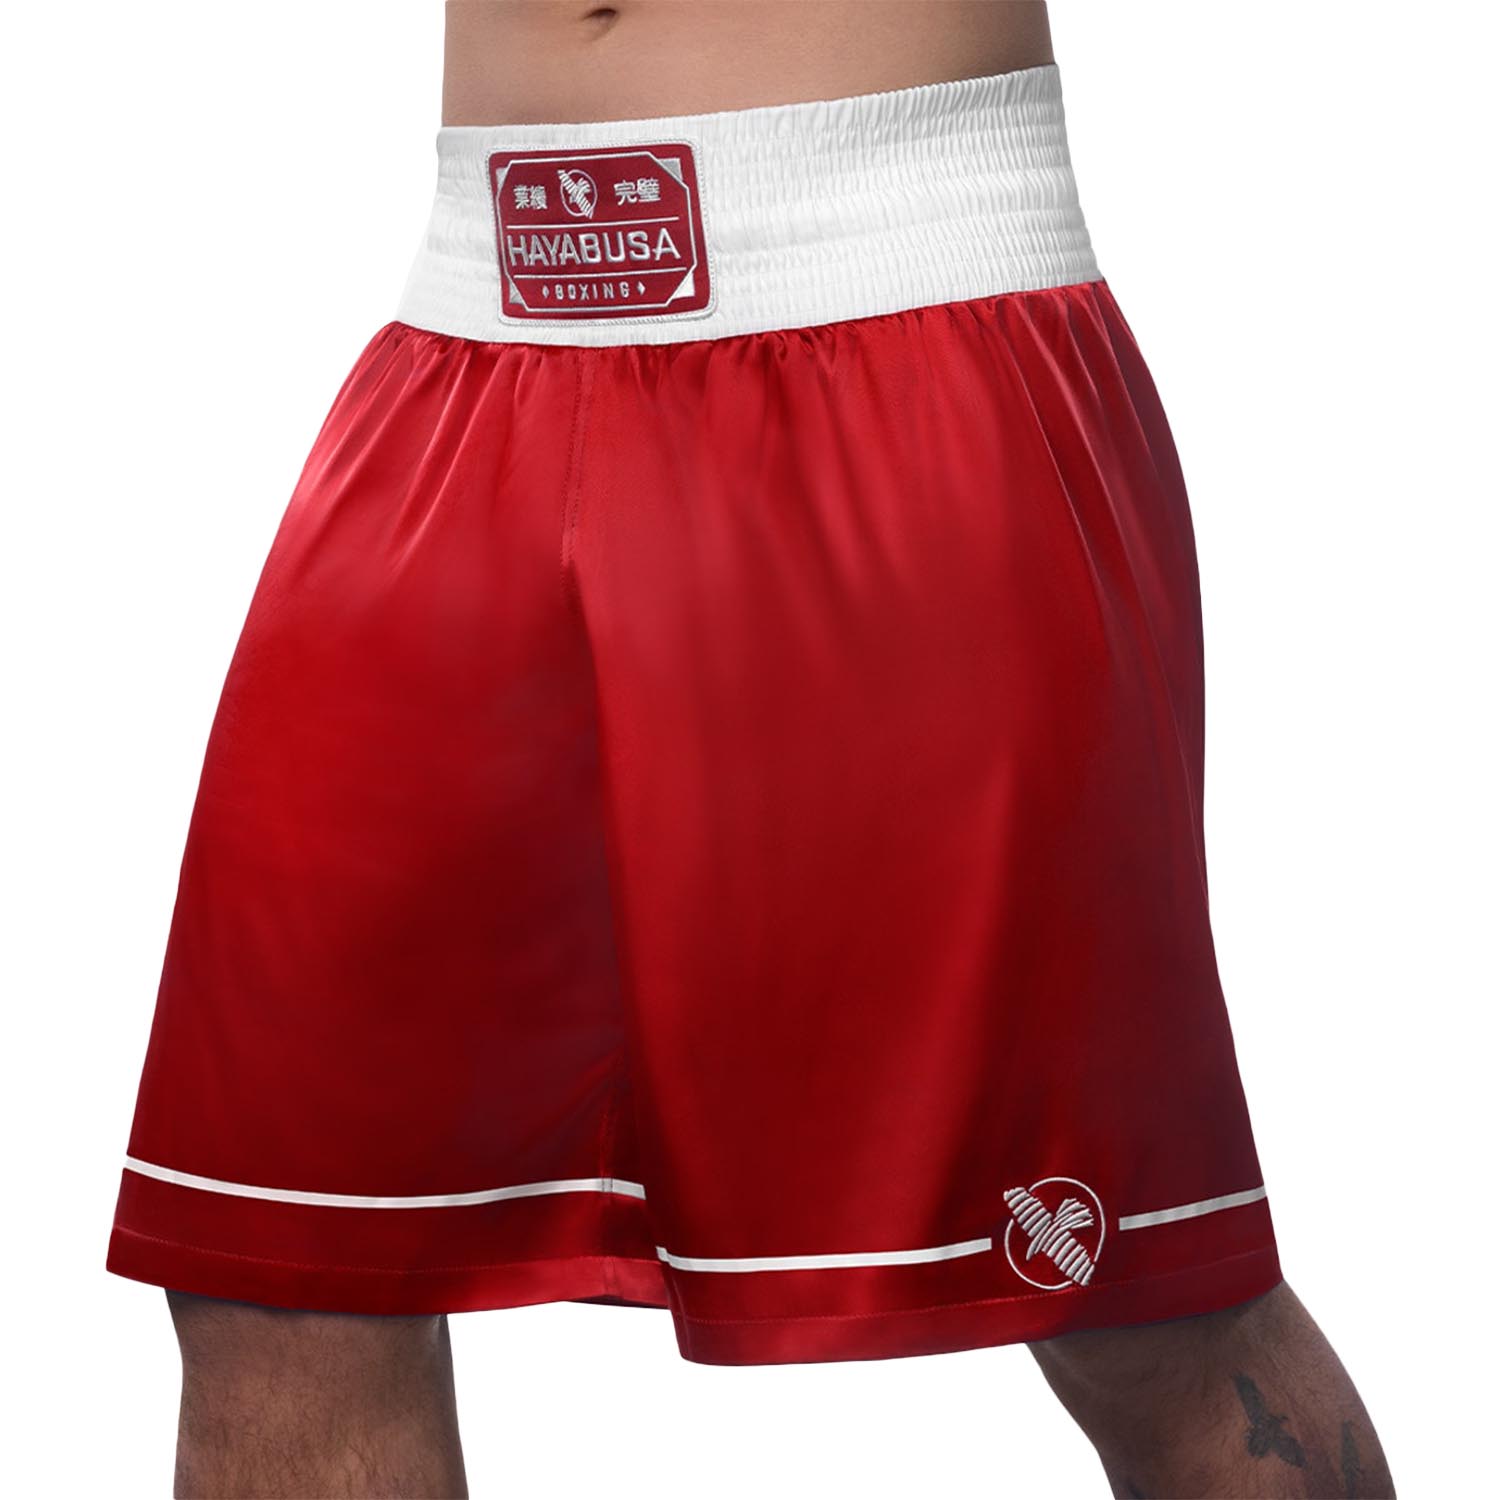 Hayabusa Boxing Shorts, Pro, red, XXL